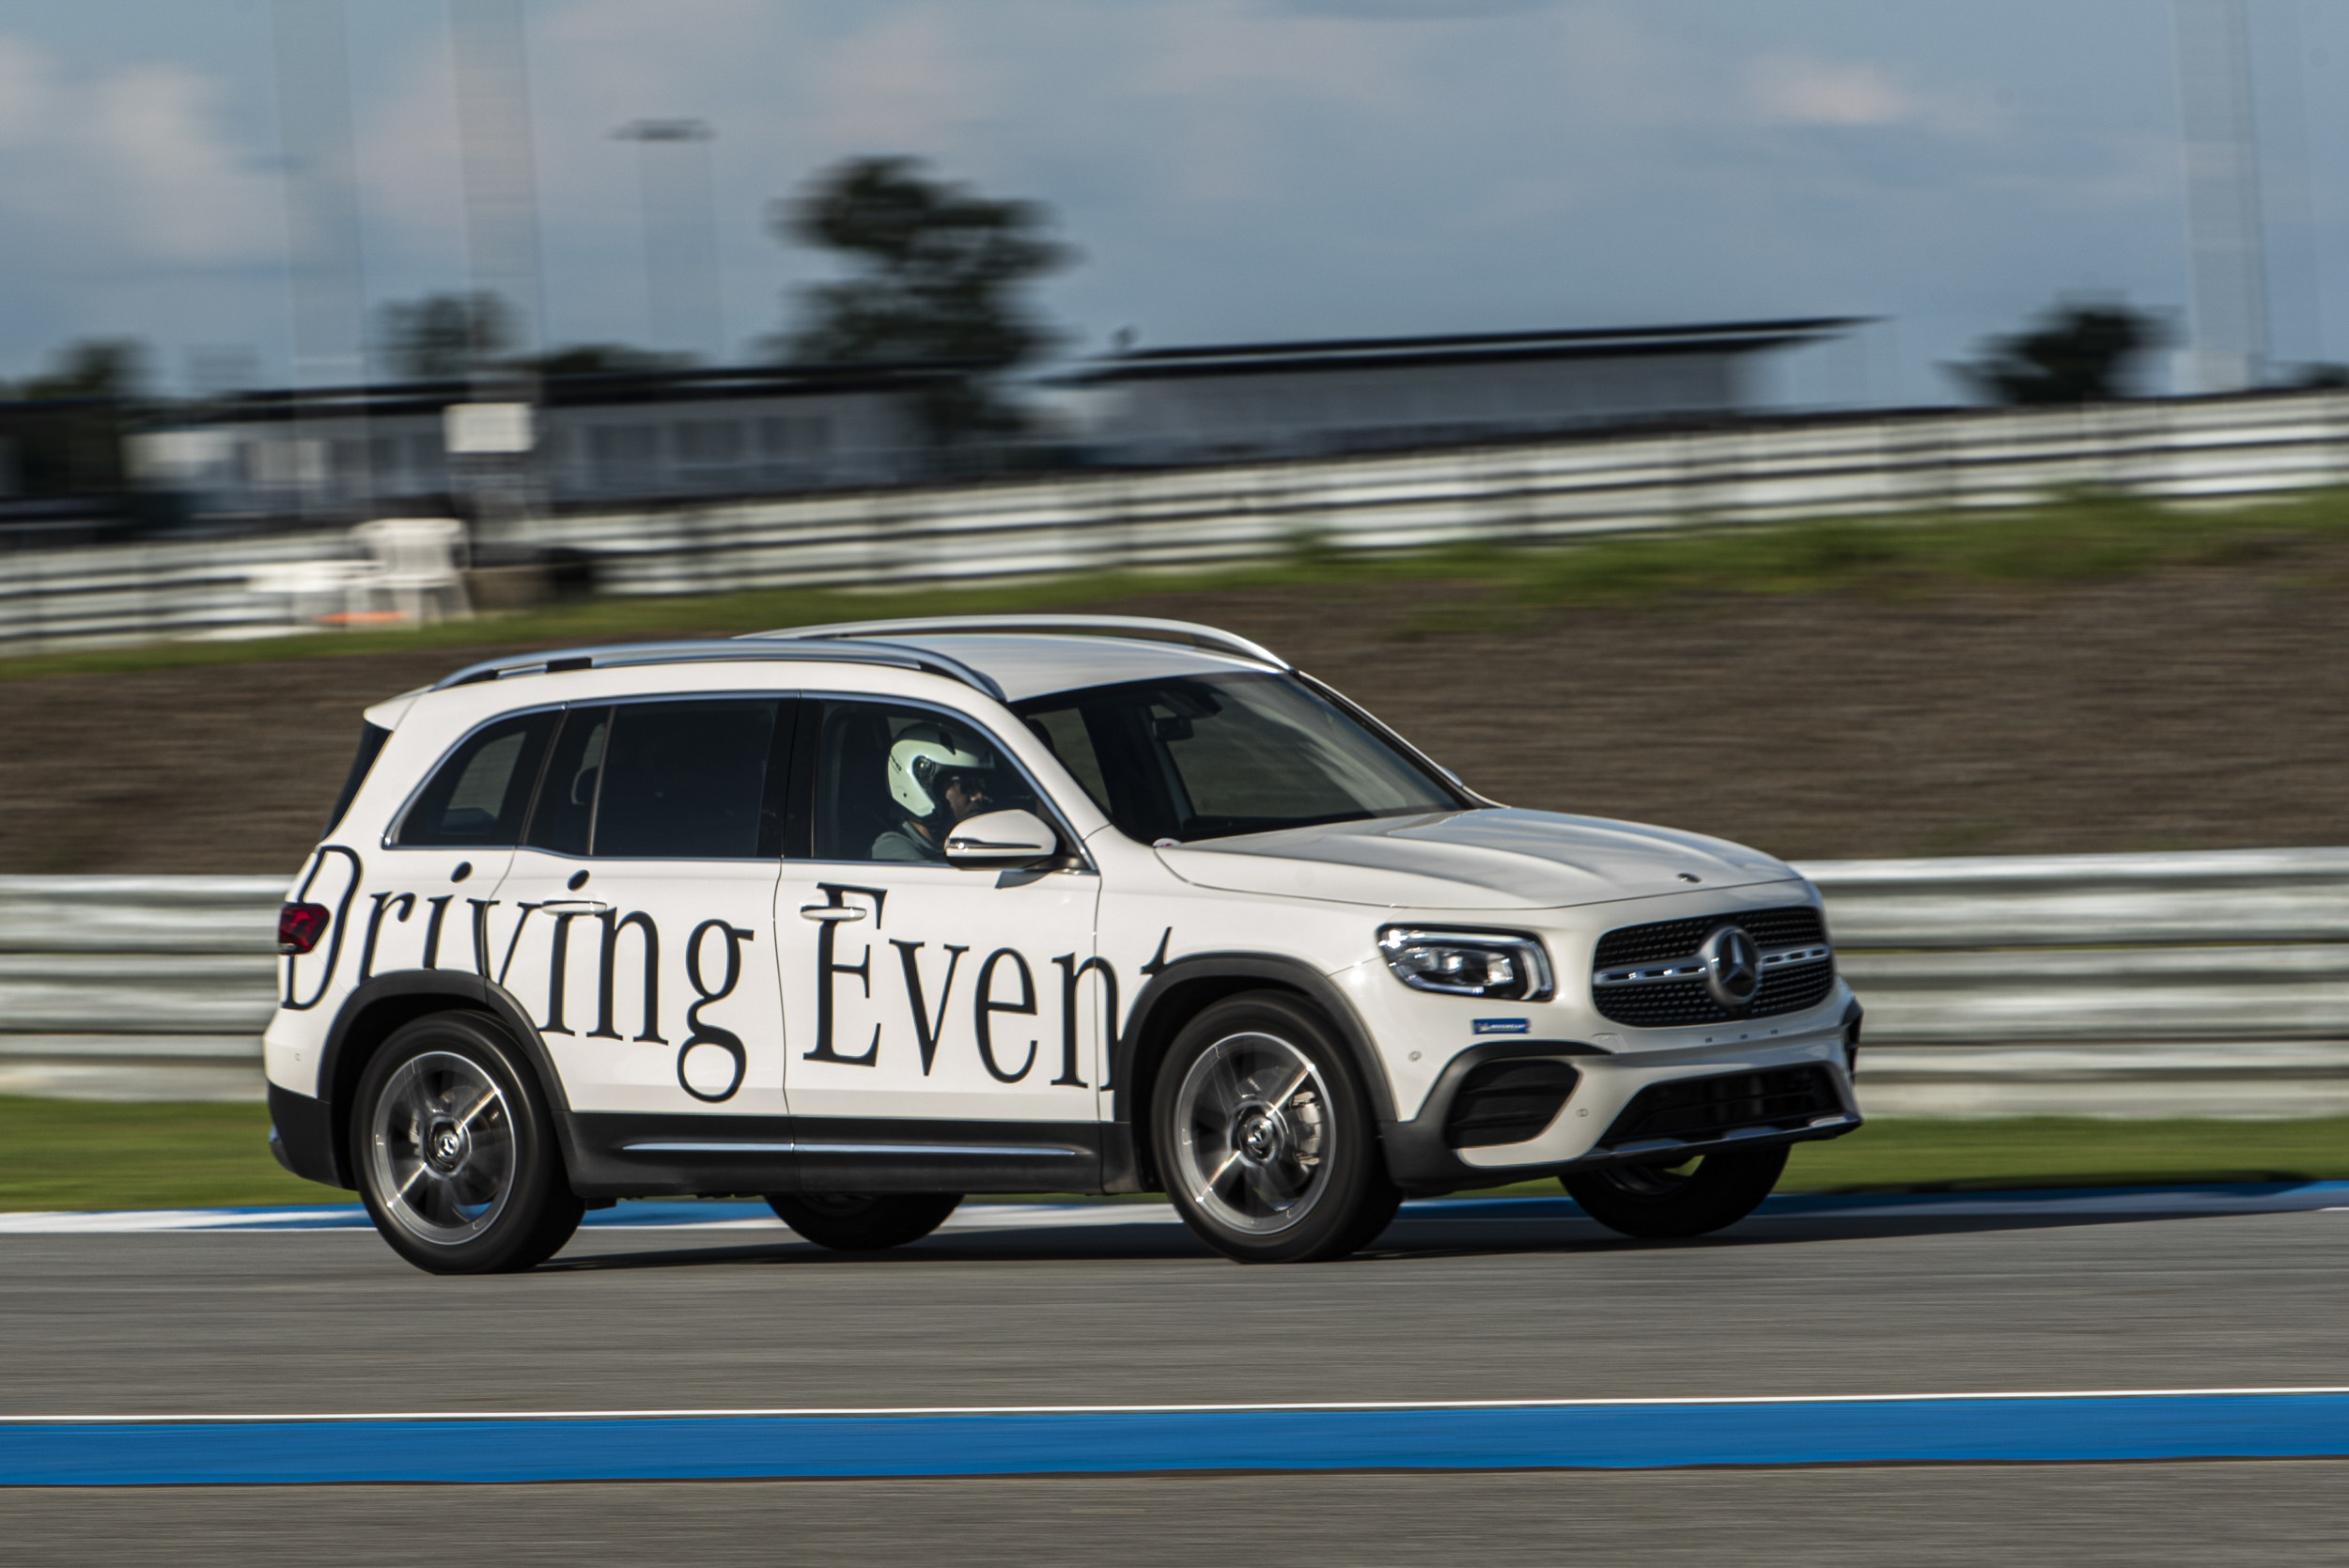 Mercedes-Benz Driving Events 2022